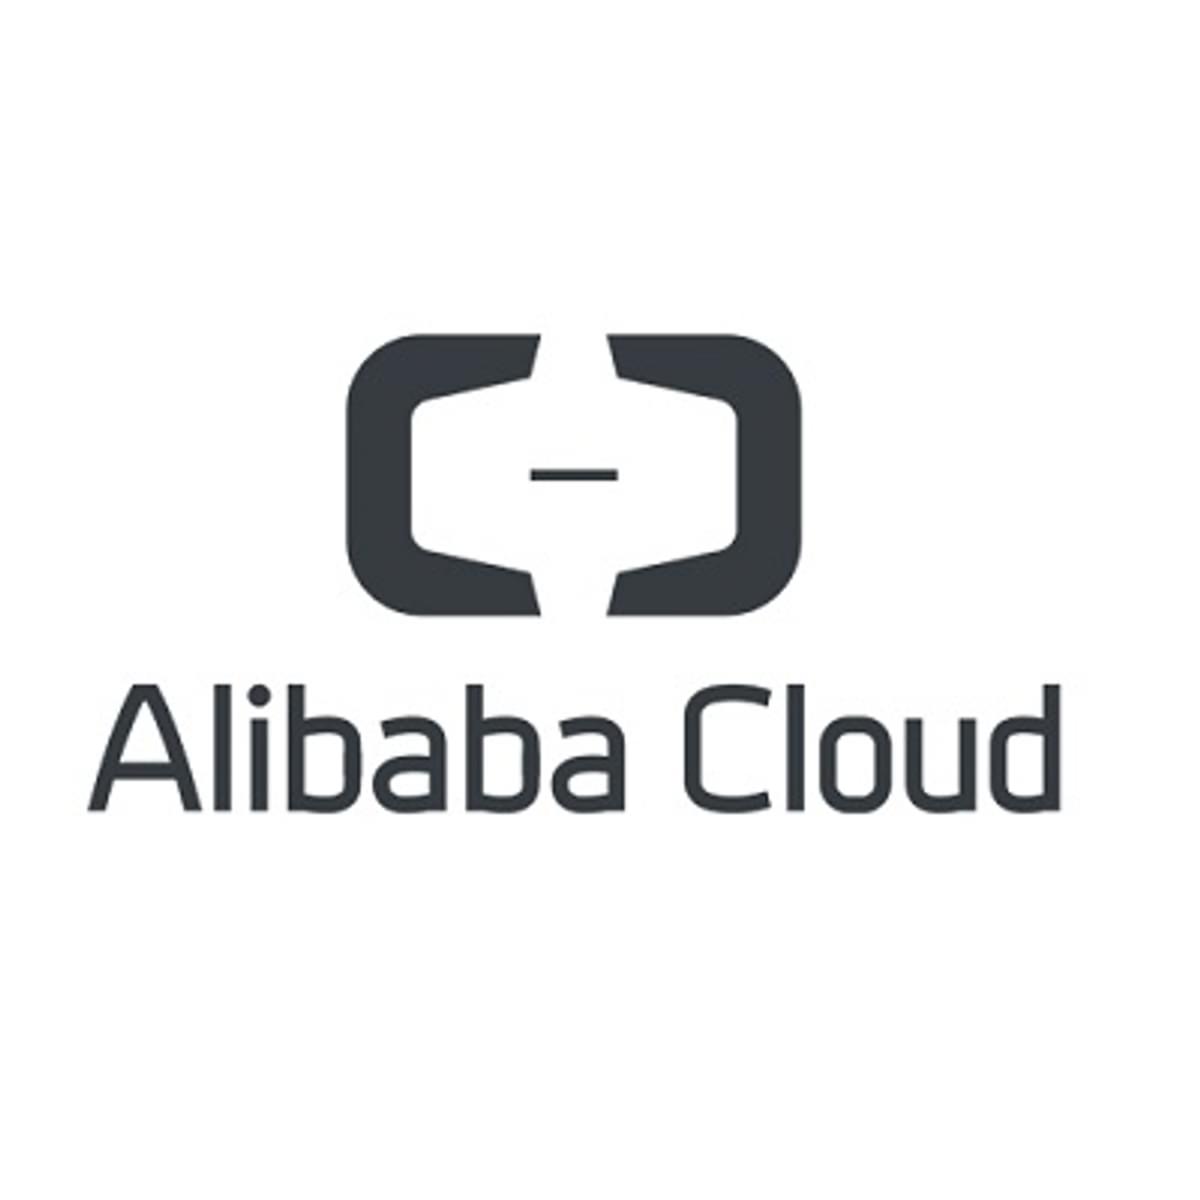 Alibaba ontwikkelt snelle open source RISC-V processor image